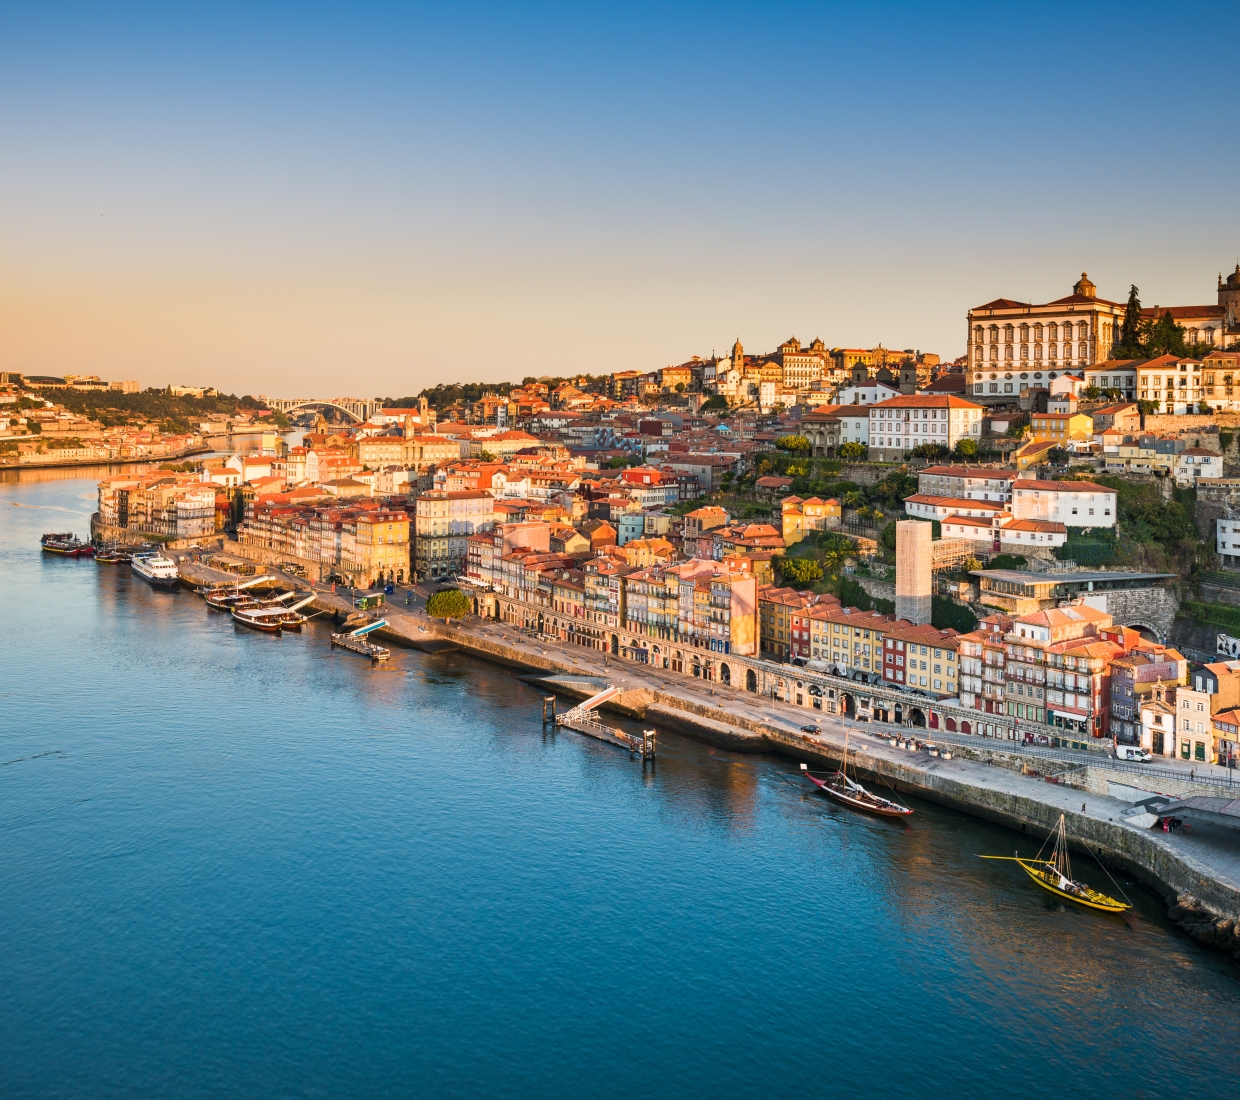 Seleção dos melhores e mais bonitos hotéis e casas de férias em Douro e Norte